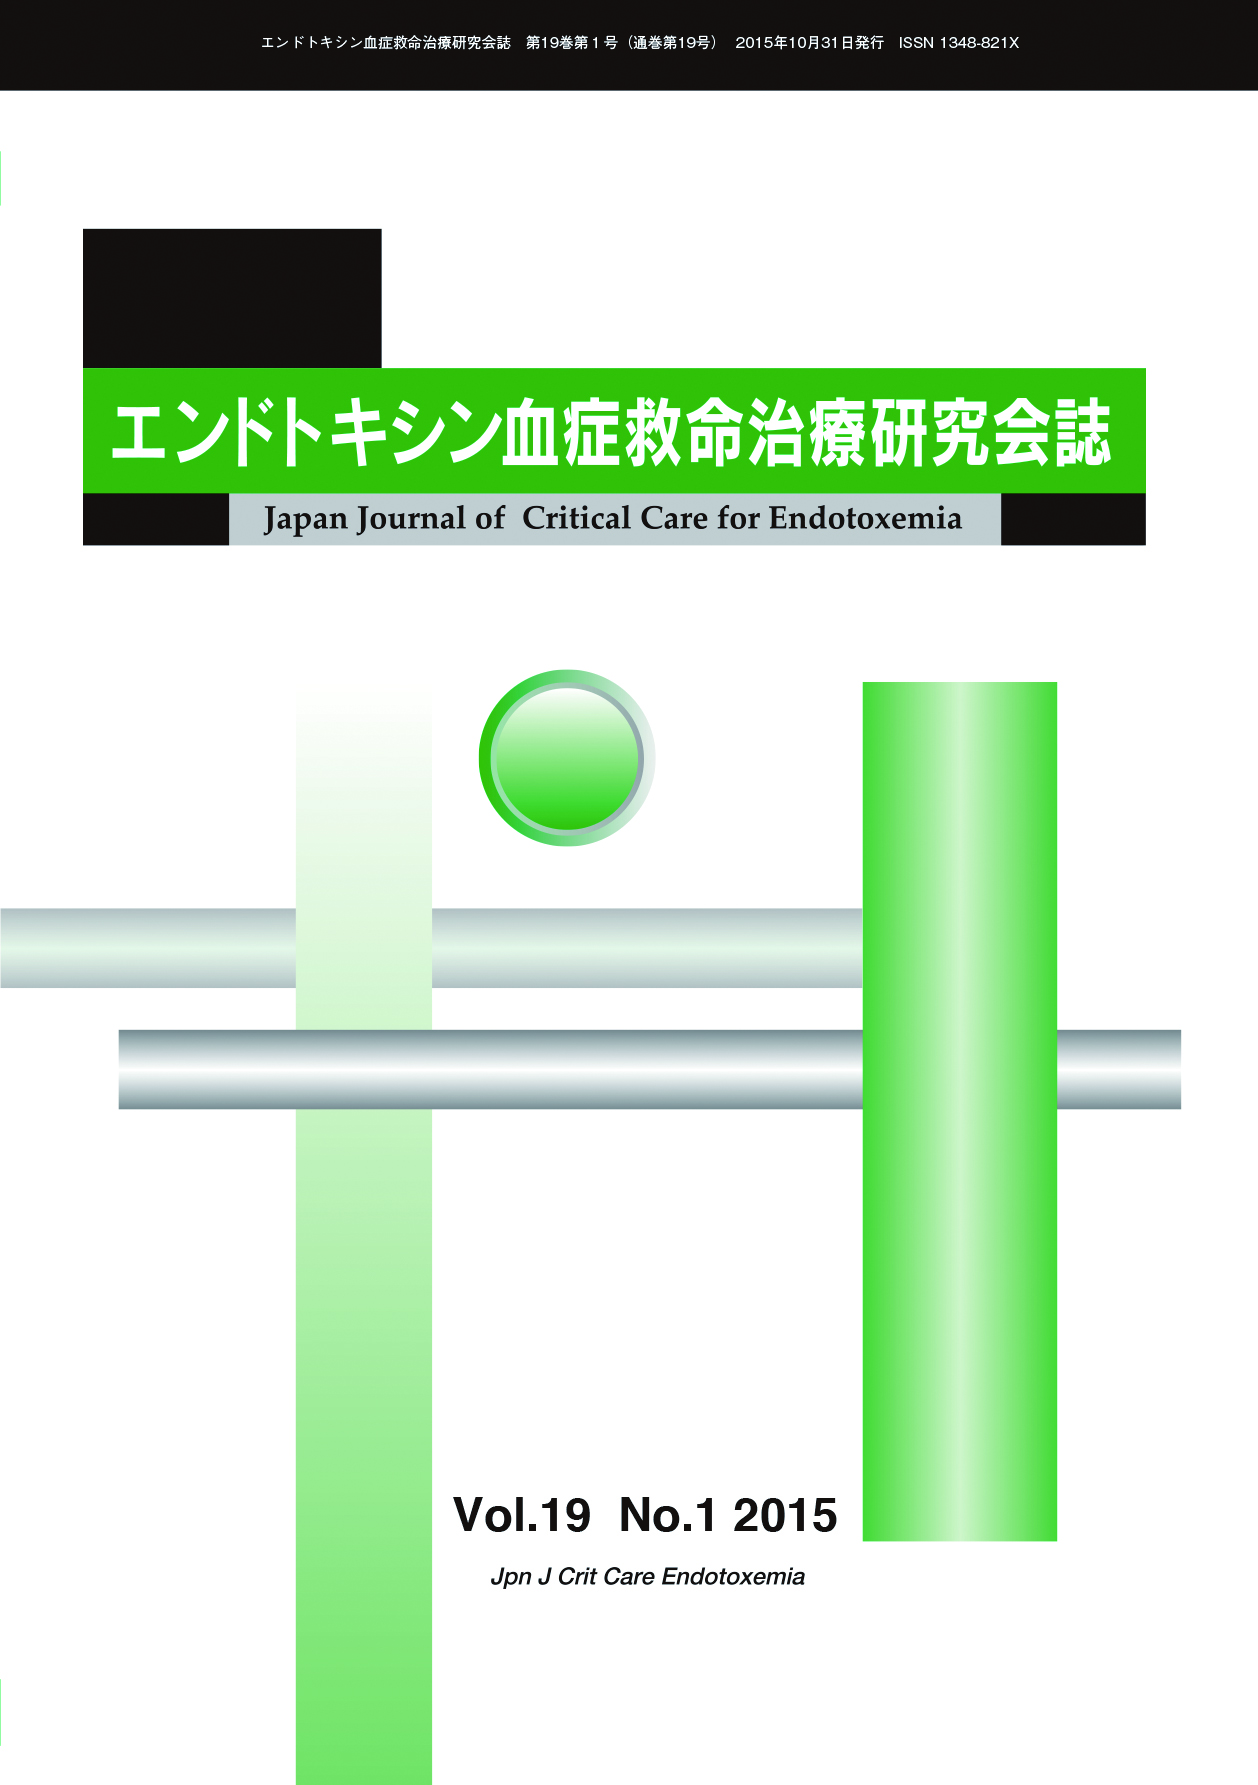 エンドトキシン血症救命治療研究会誌 Vol.19 No.1 2015